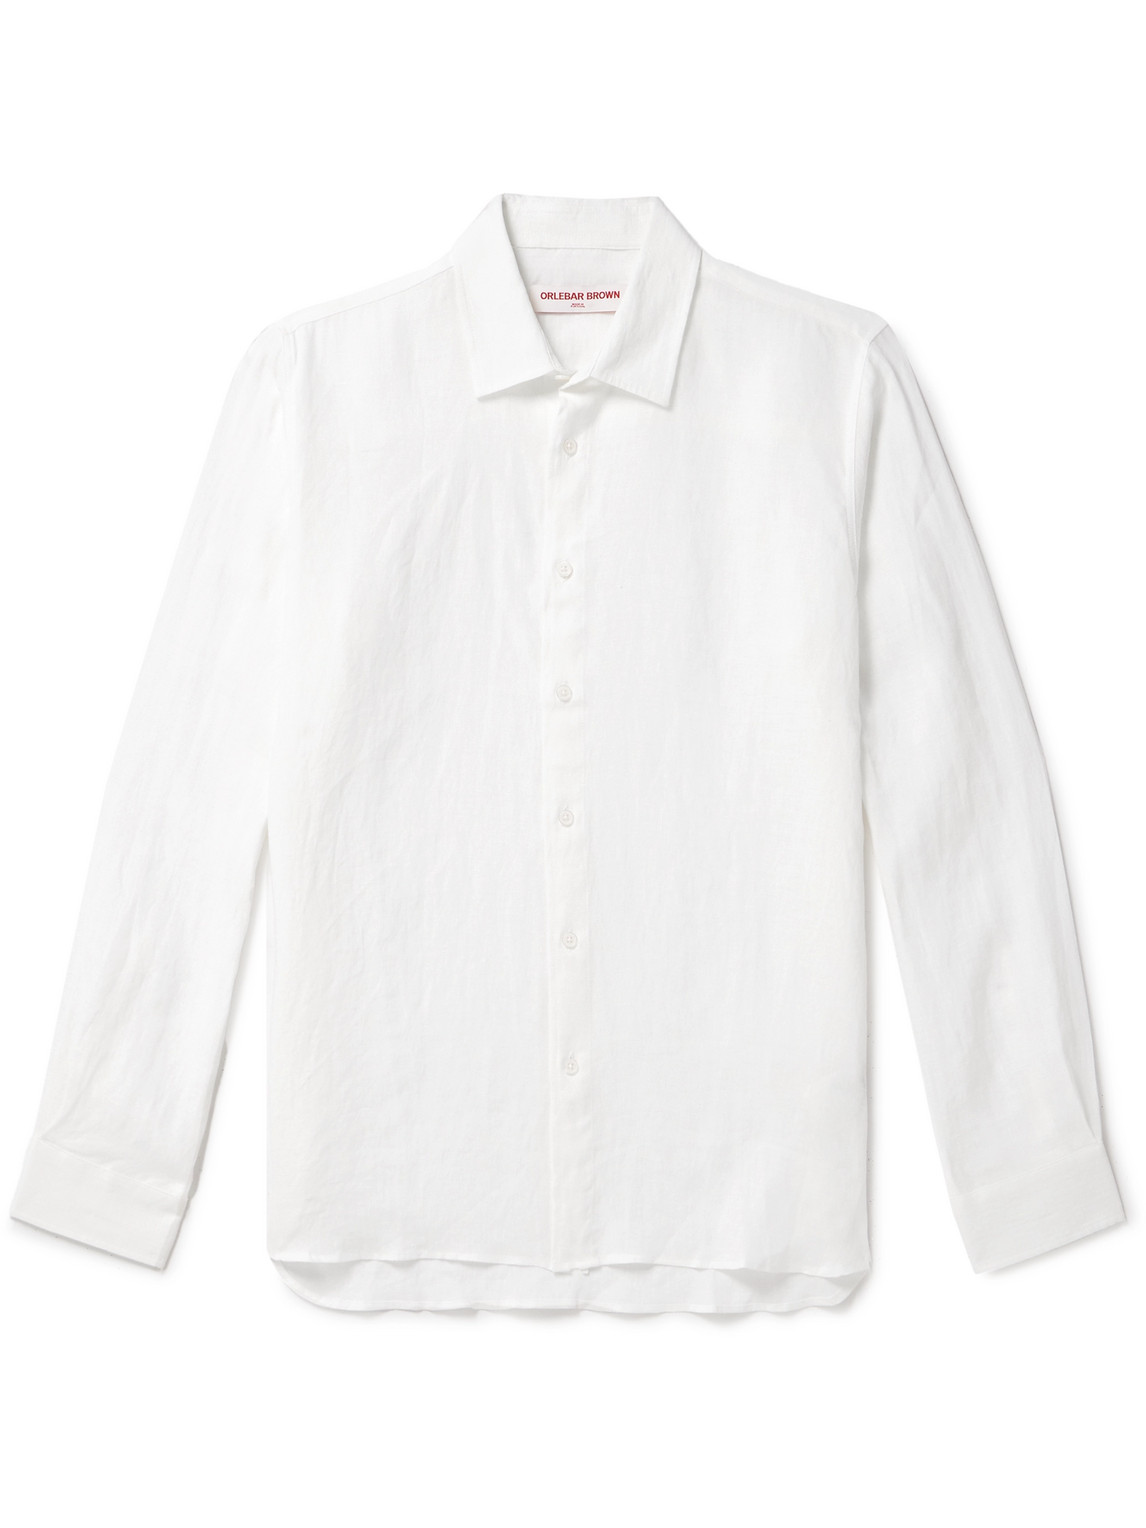 Orlebar Brown - Justin Linen Shirt - Men - White - XXL von Orlebar Brown